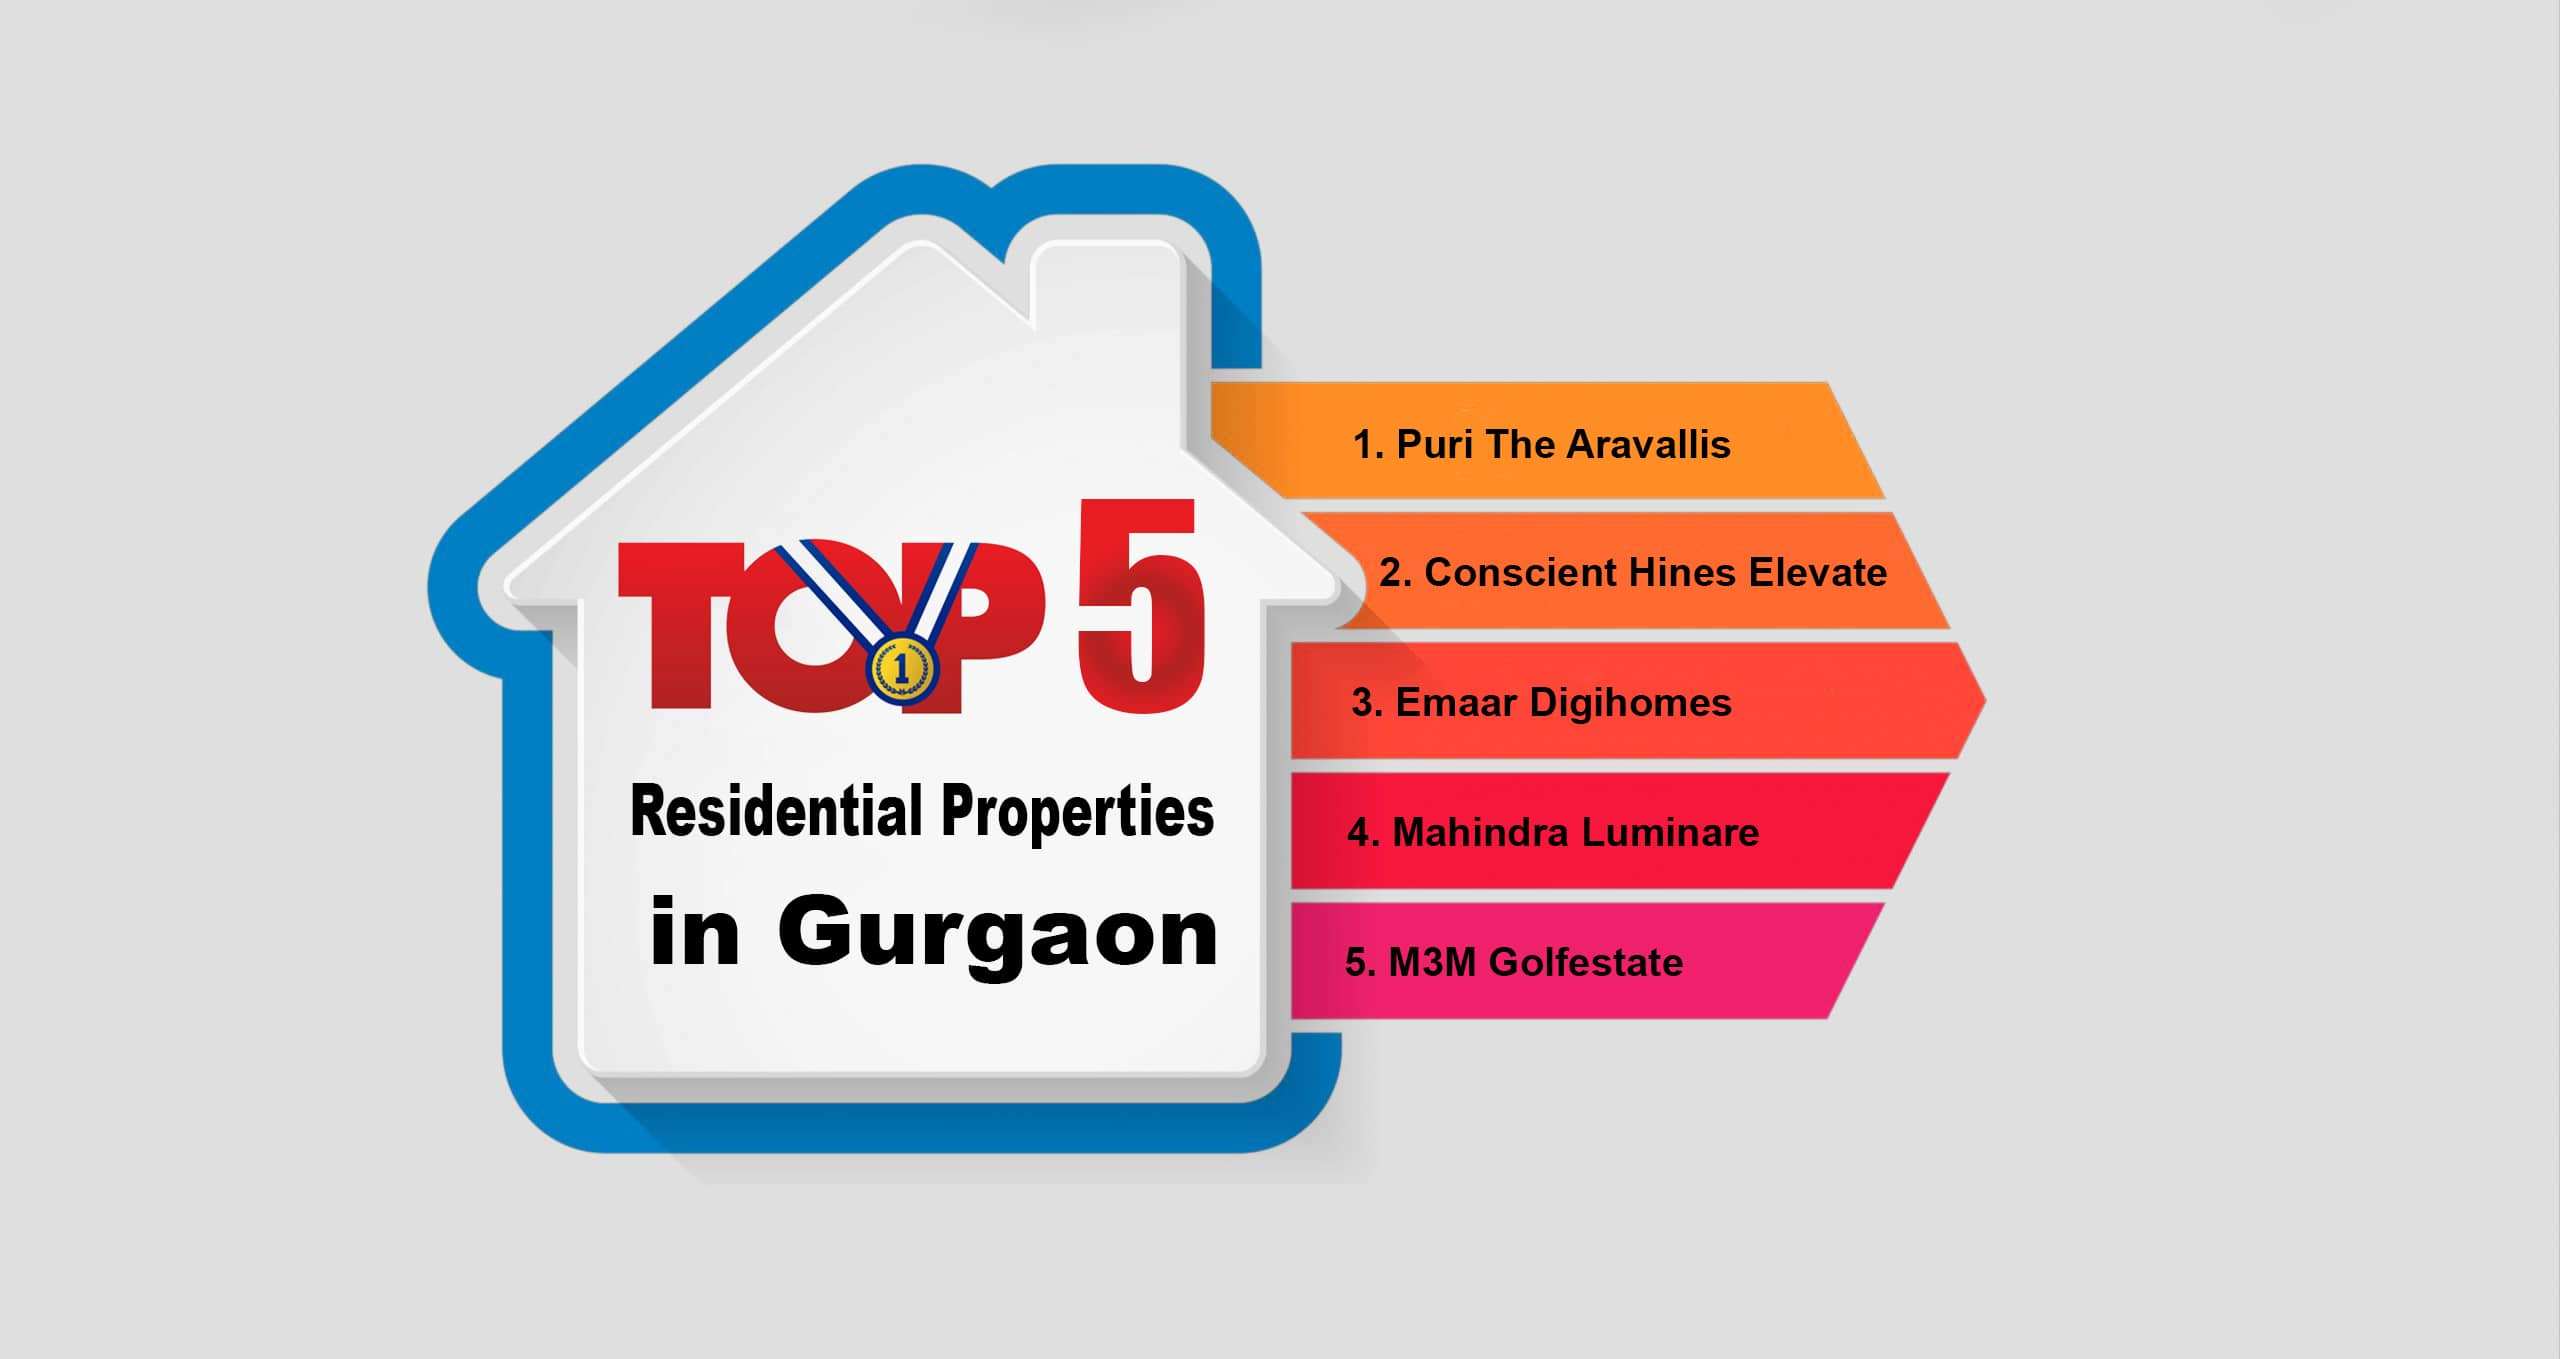 Top 5 Residential Properties in Gurgaon